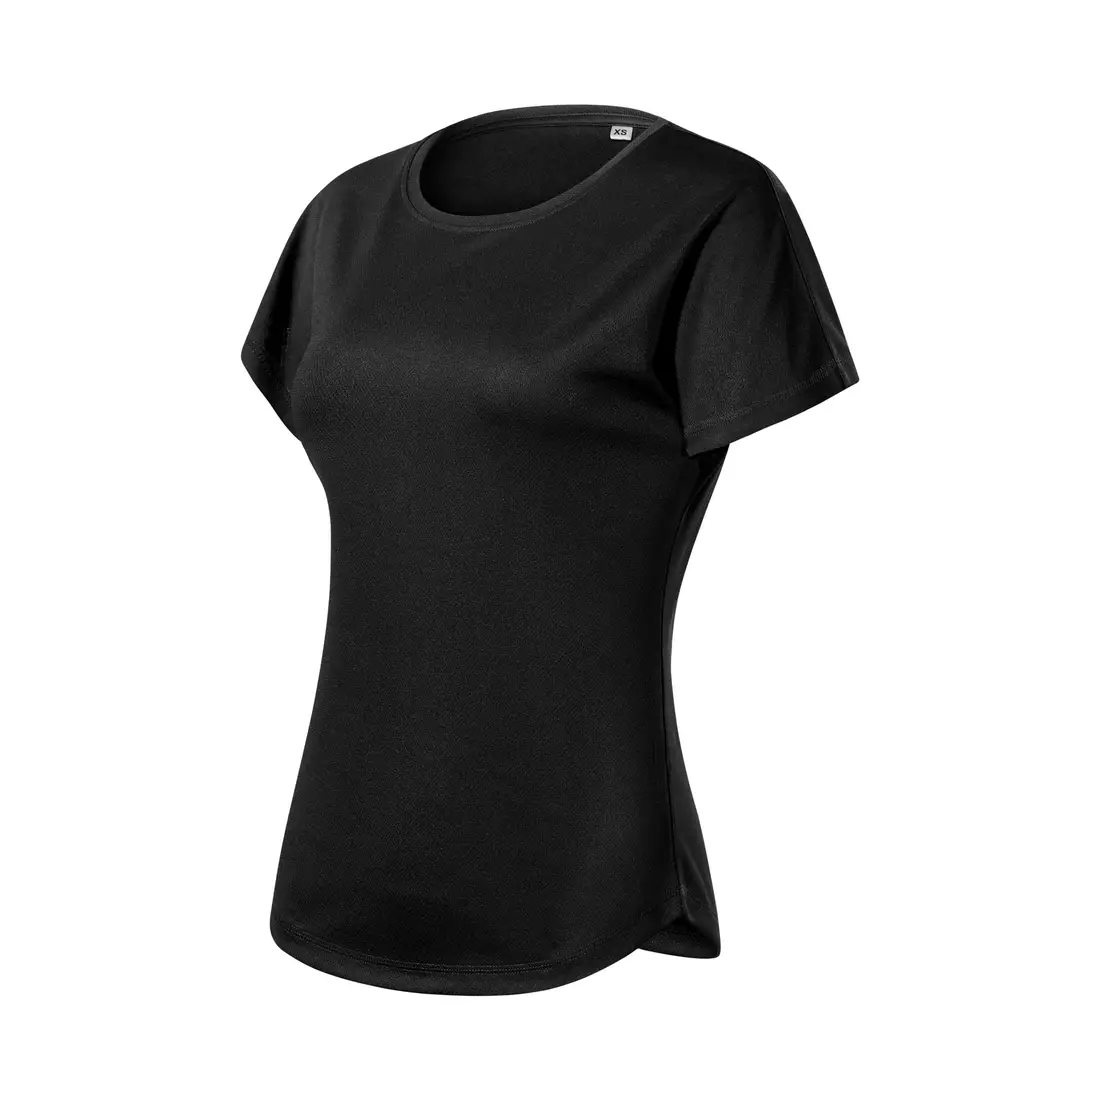 MALFINI CHANCE GRS Női sport póló, rövid ujjú, újrahasznosított mikropoliészter, fekete 8110112